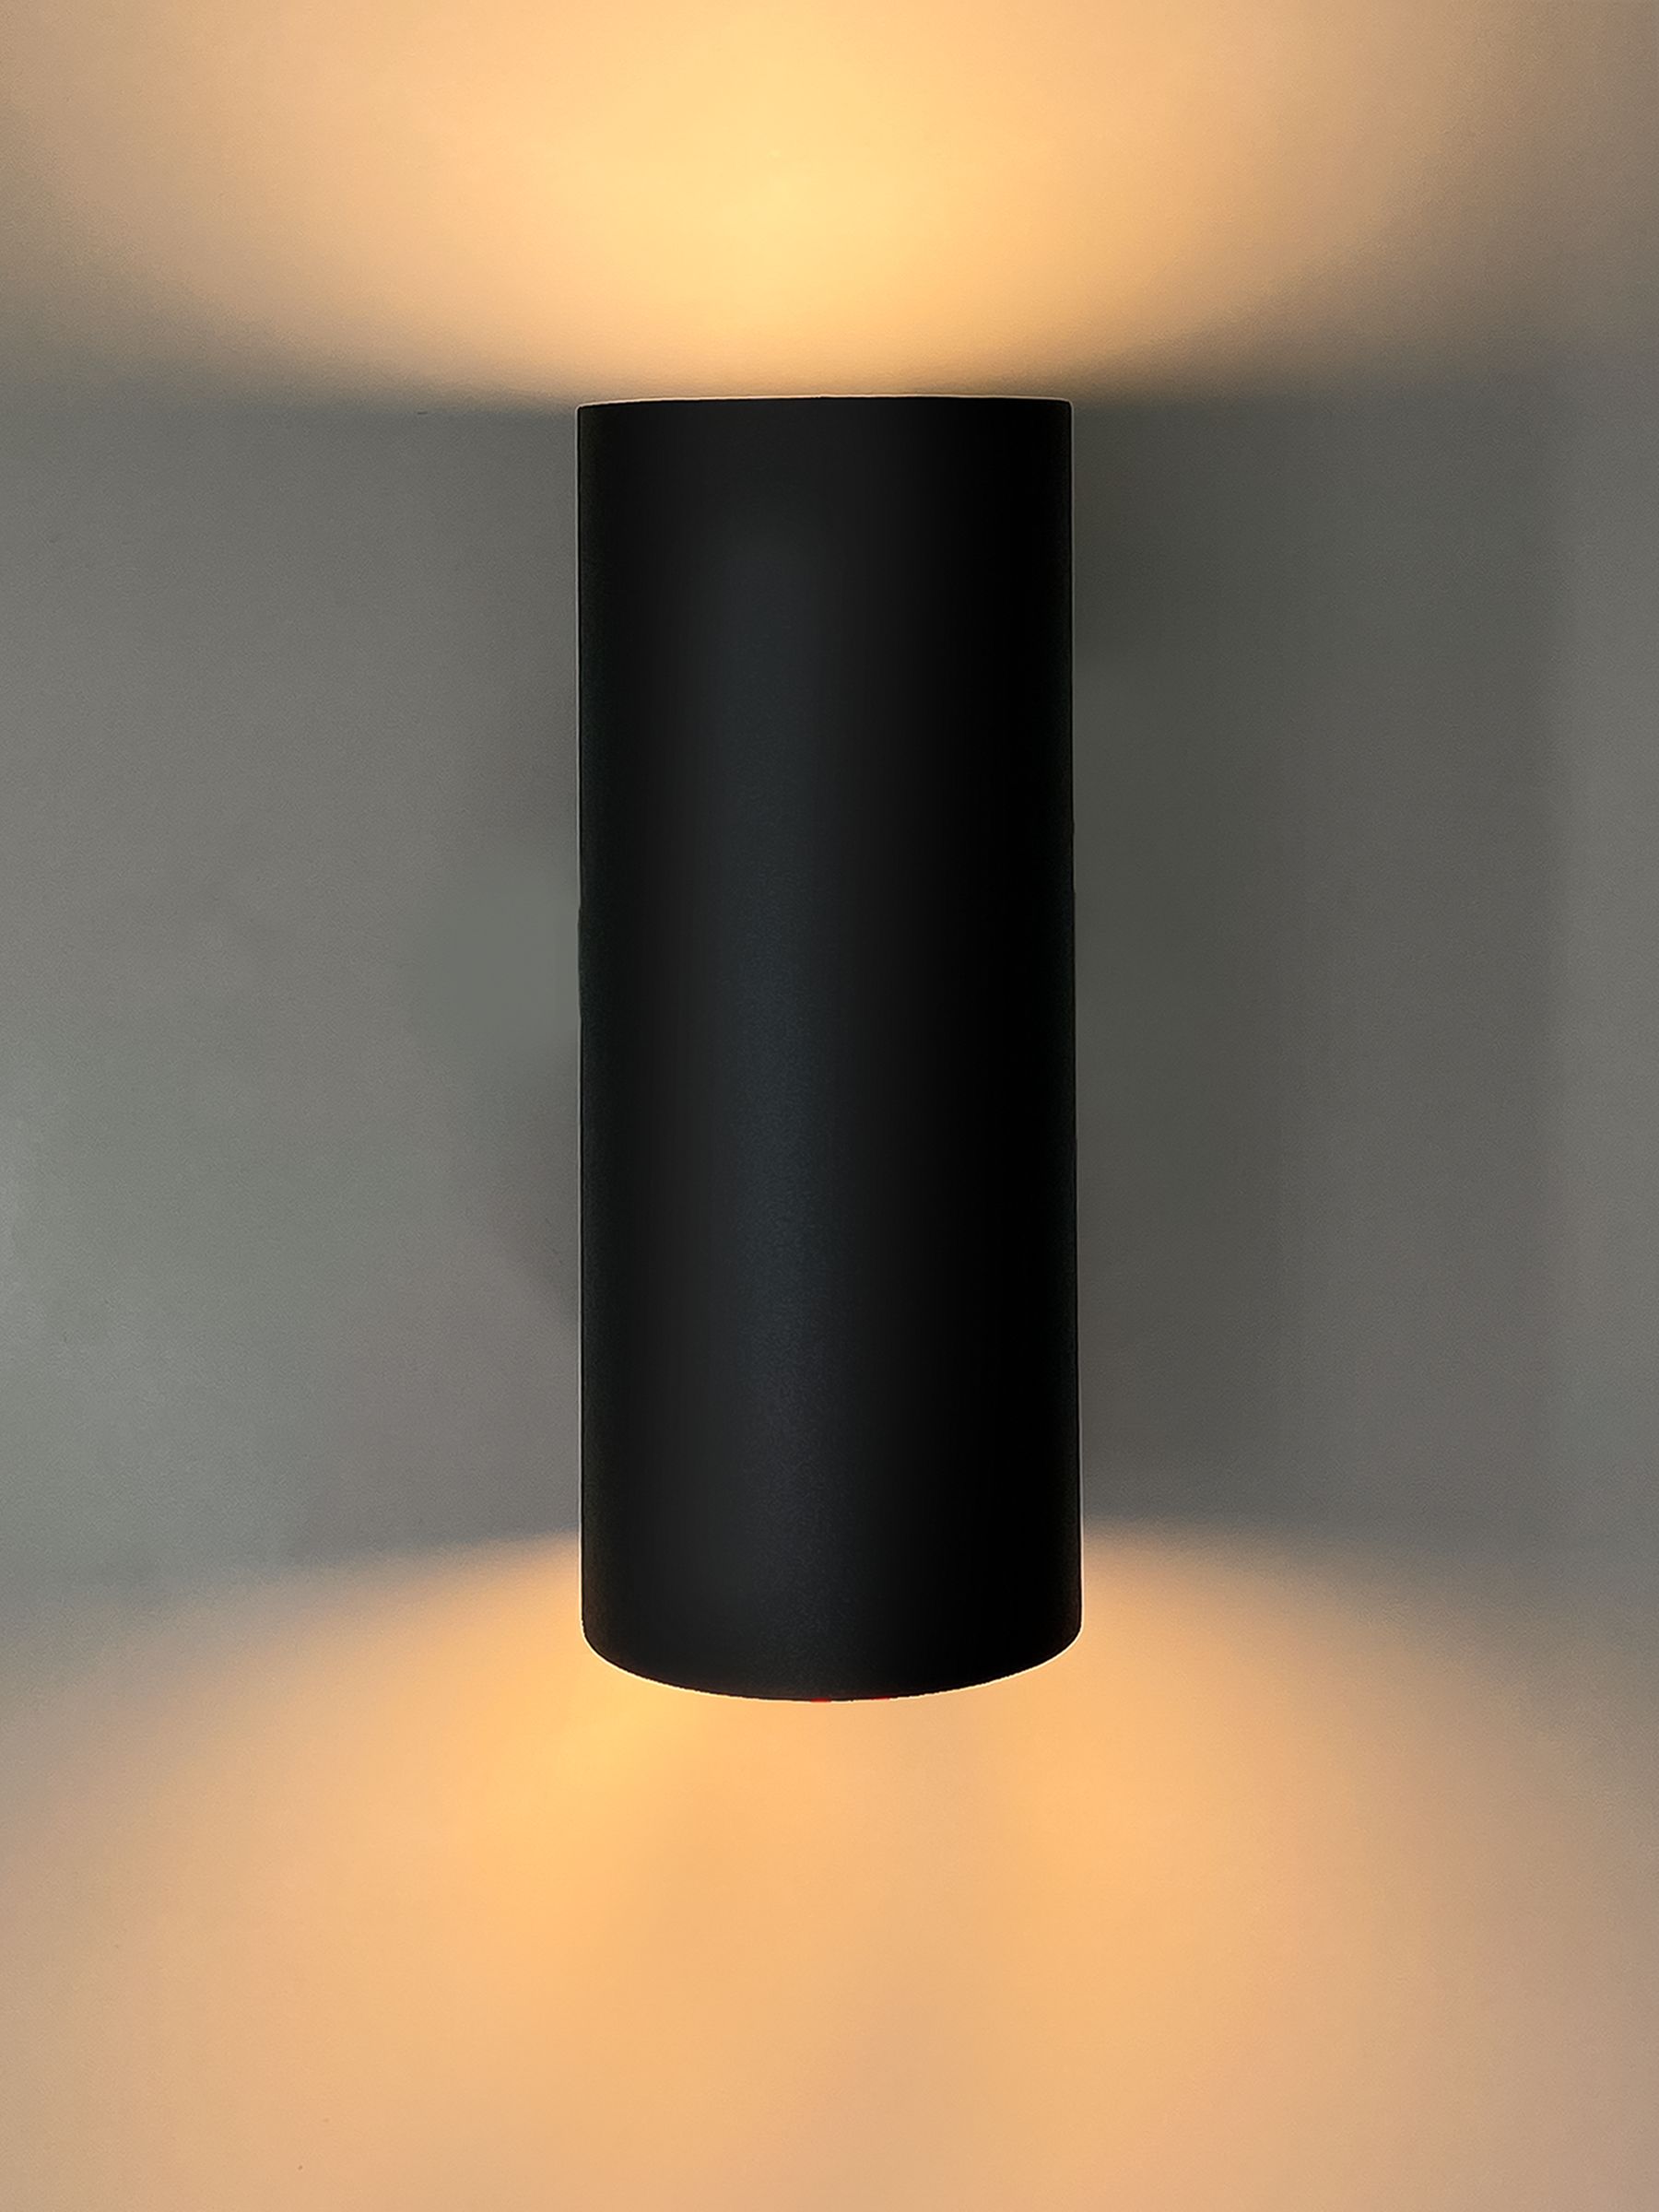 Интерьерный настенный точечный светильник Комлед INTERIOR TWIN R XS, черный